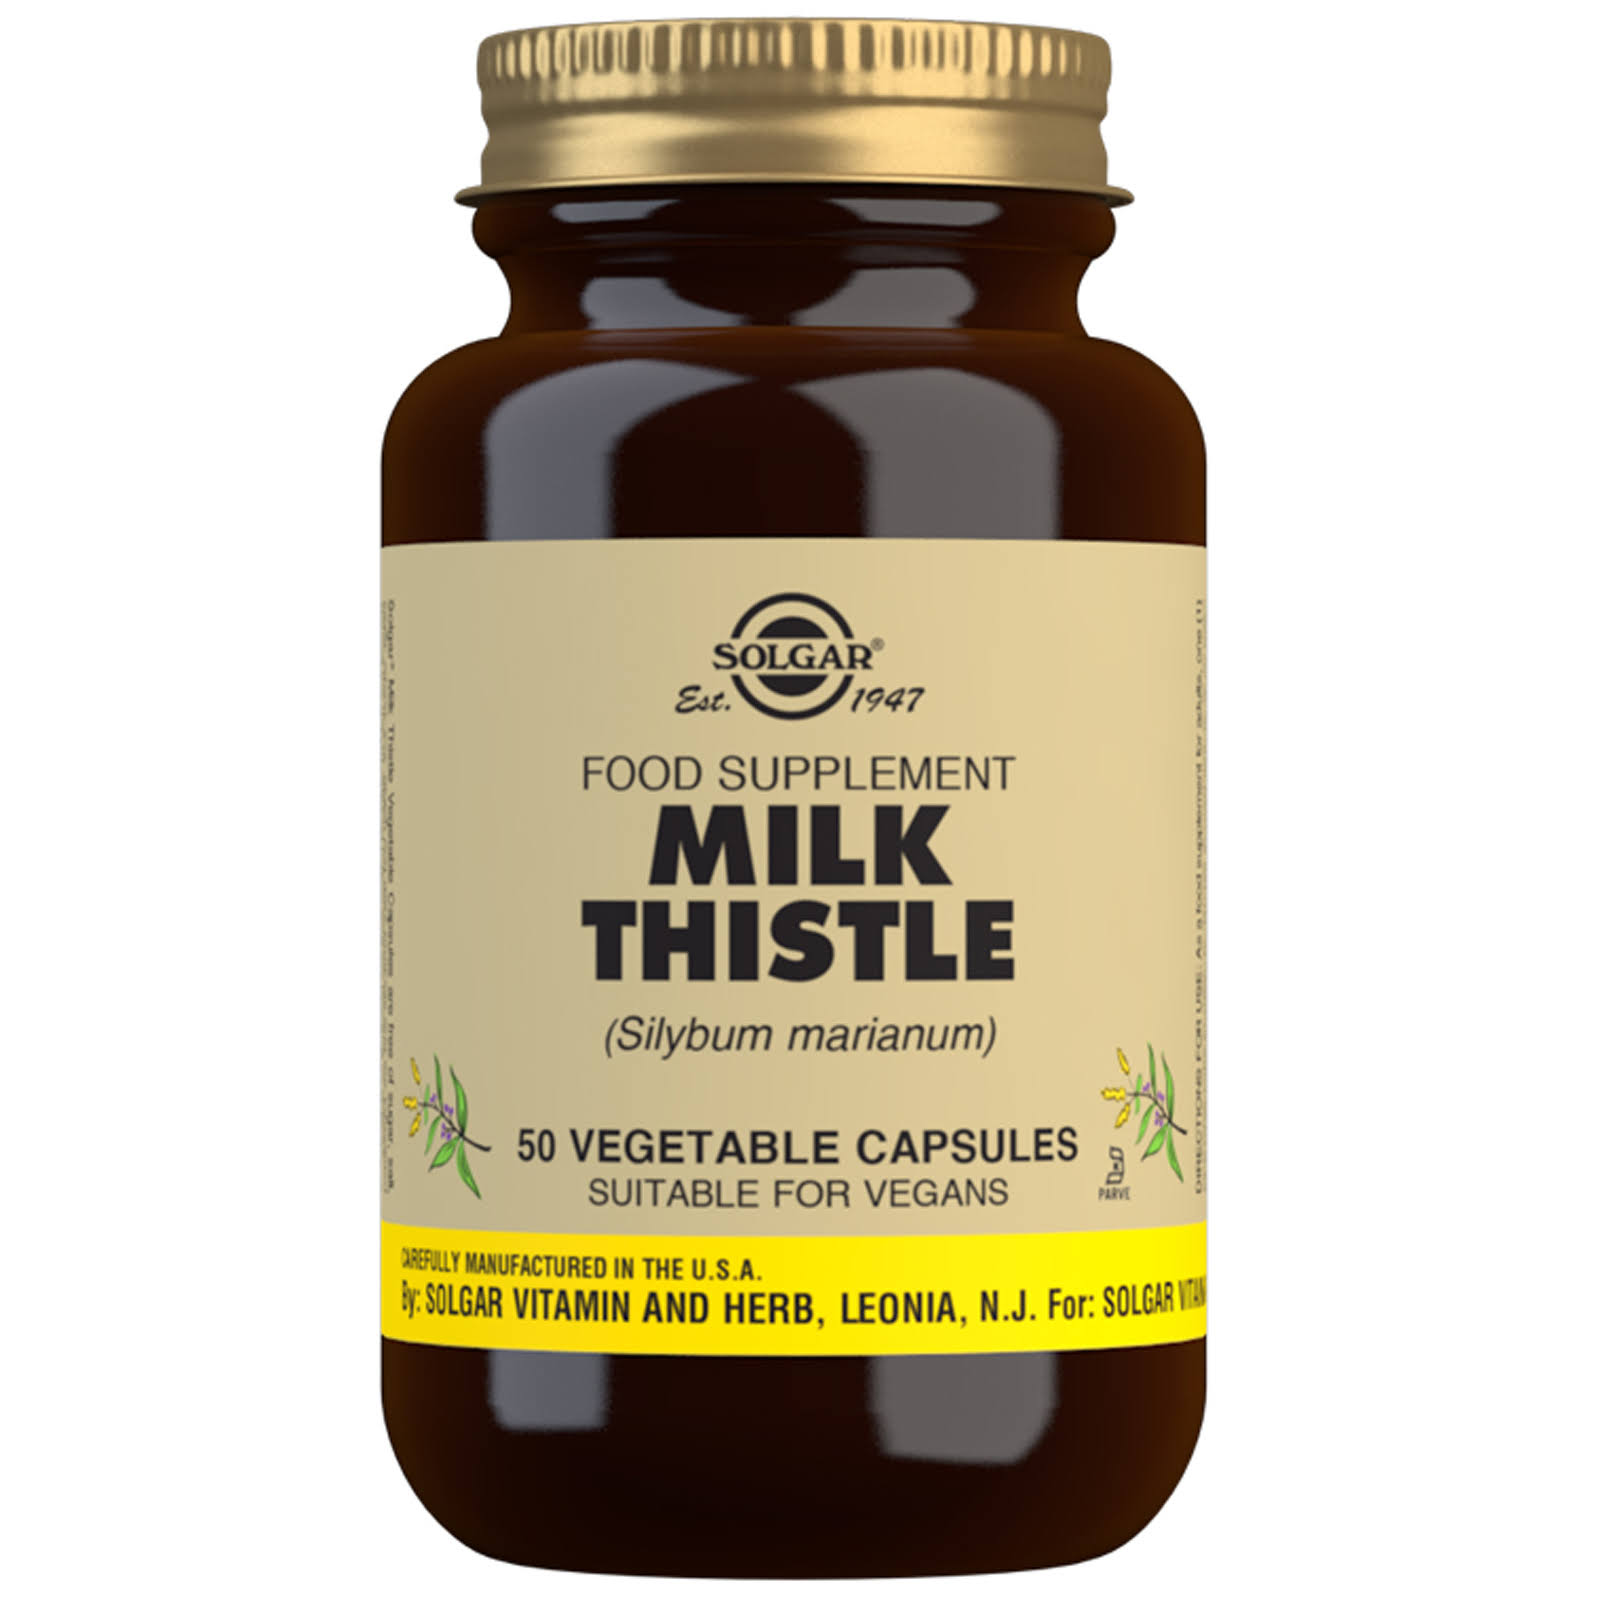 Solgar Milk Thistle - 50 Capsules